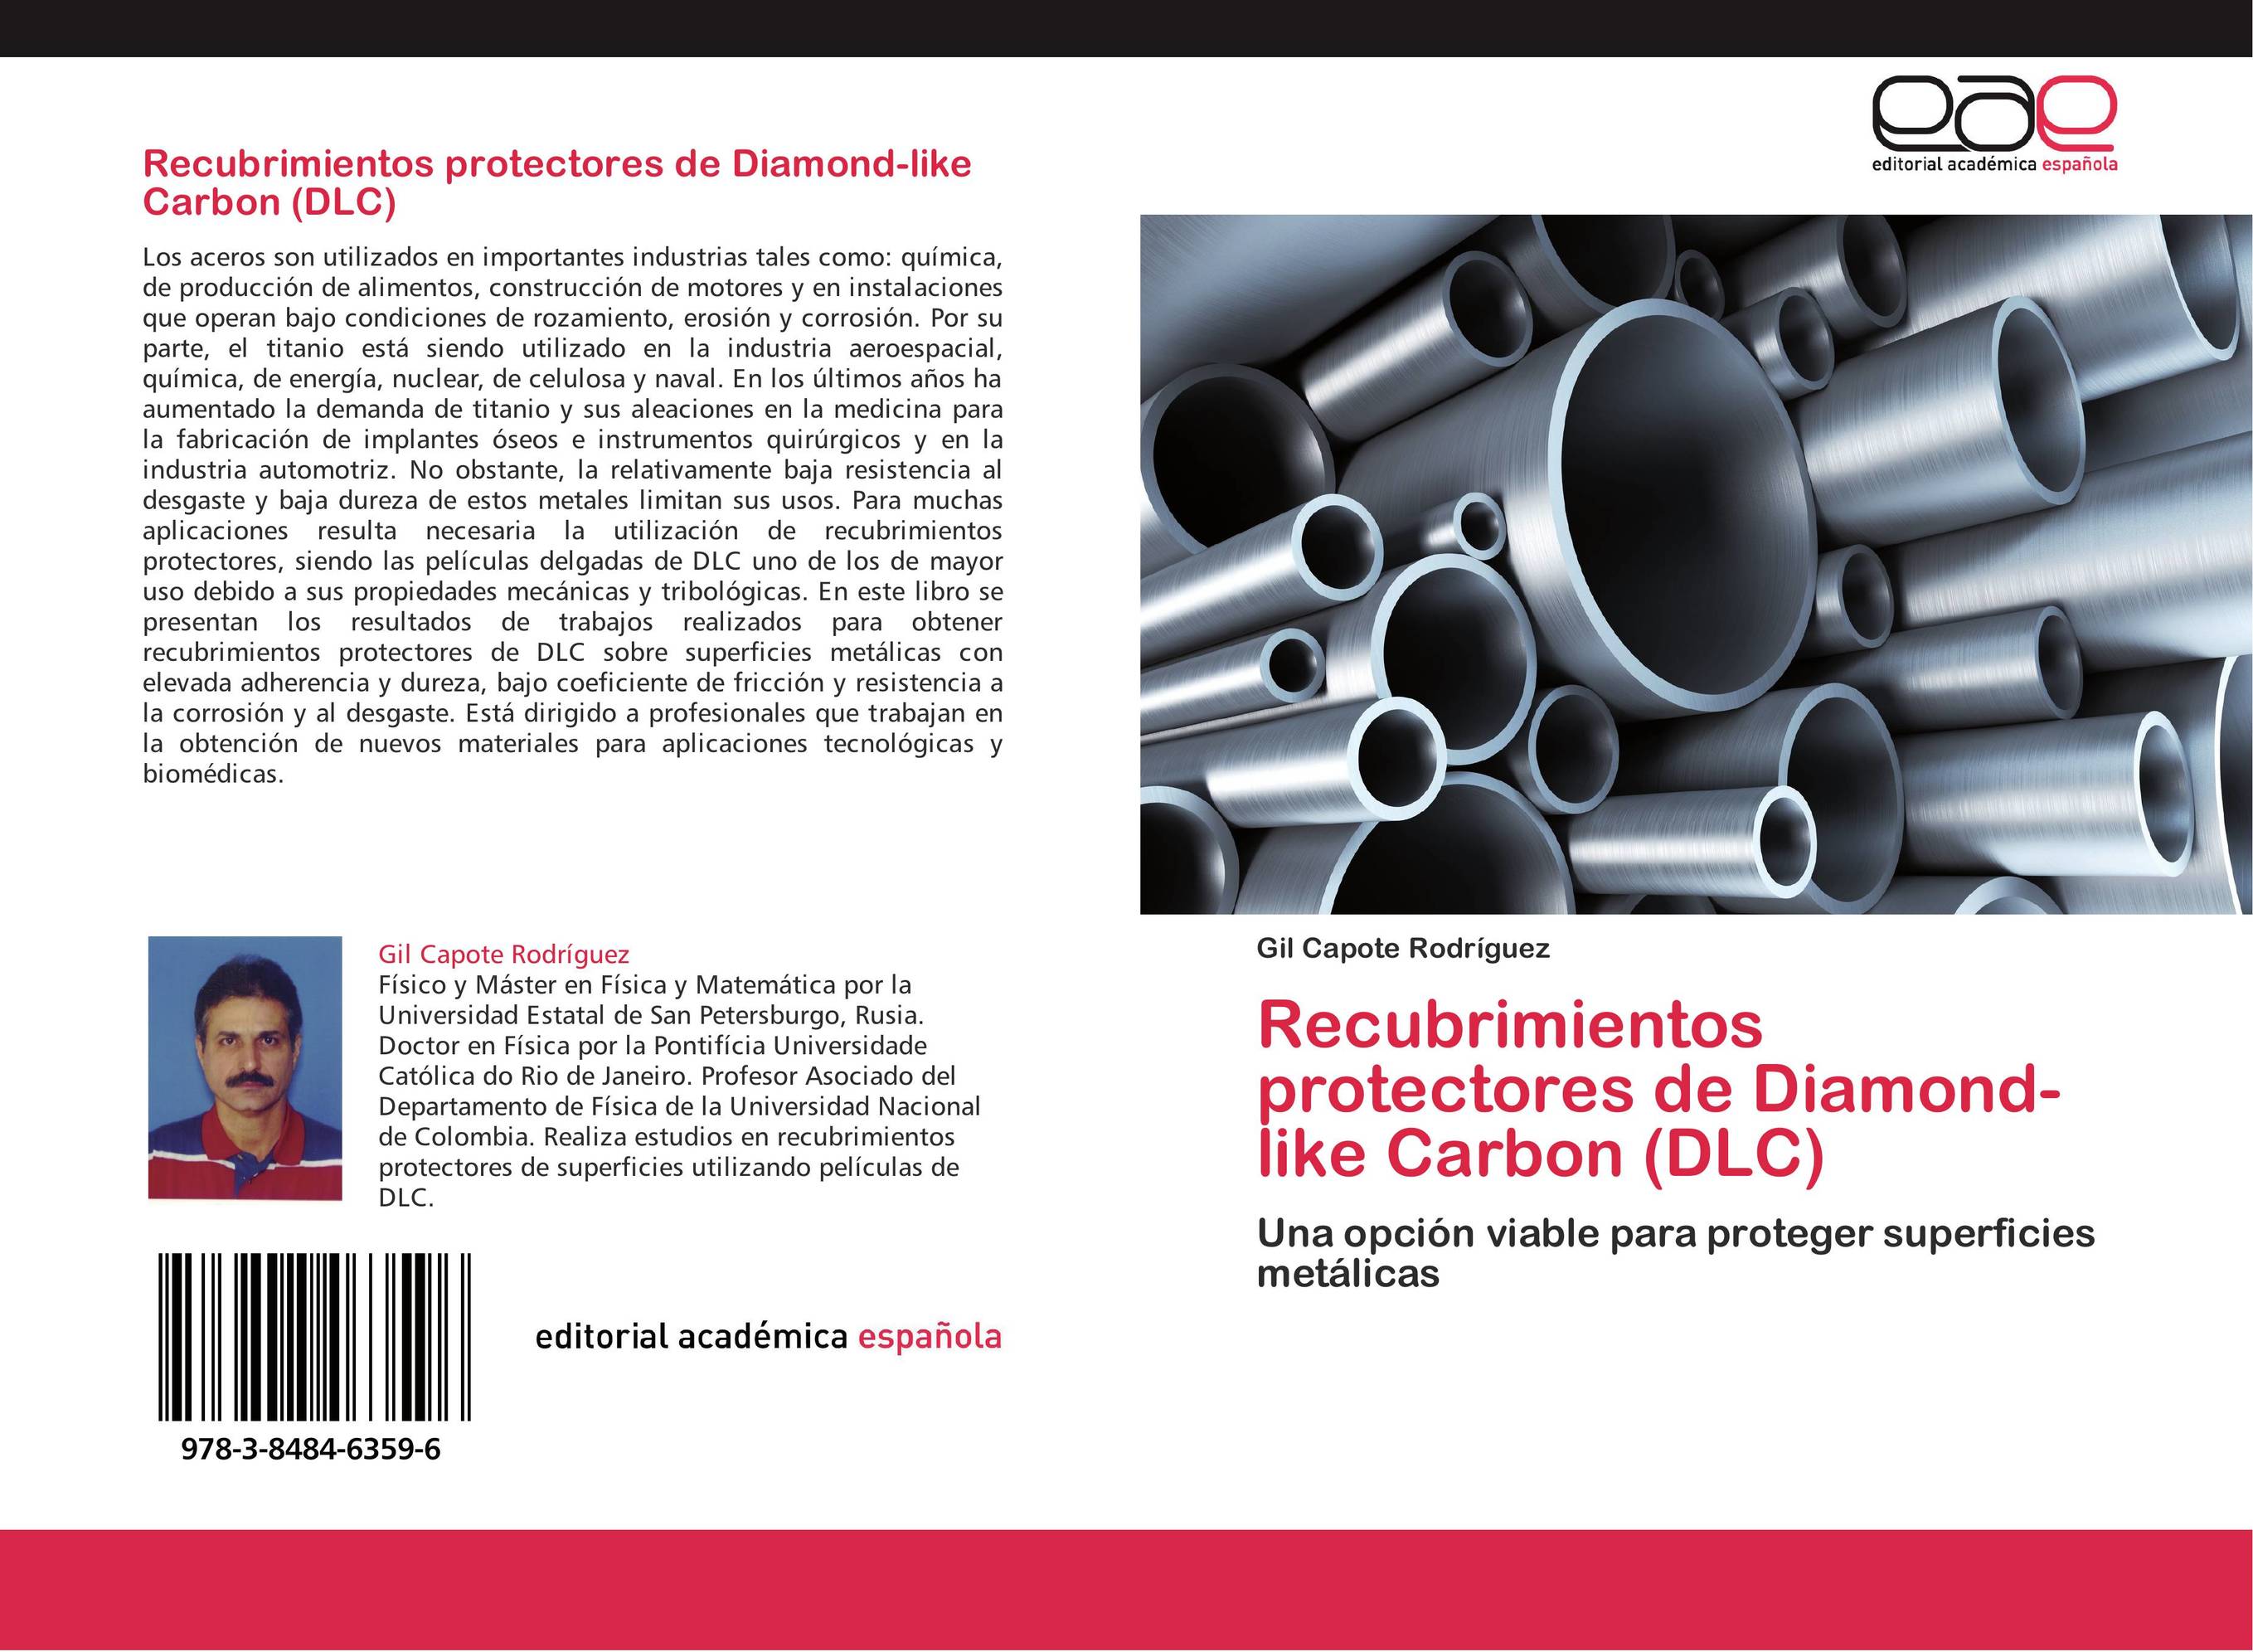 Recubrimientos protectores de Diamond-like Carbon (DLC)